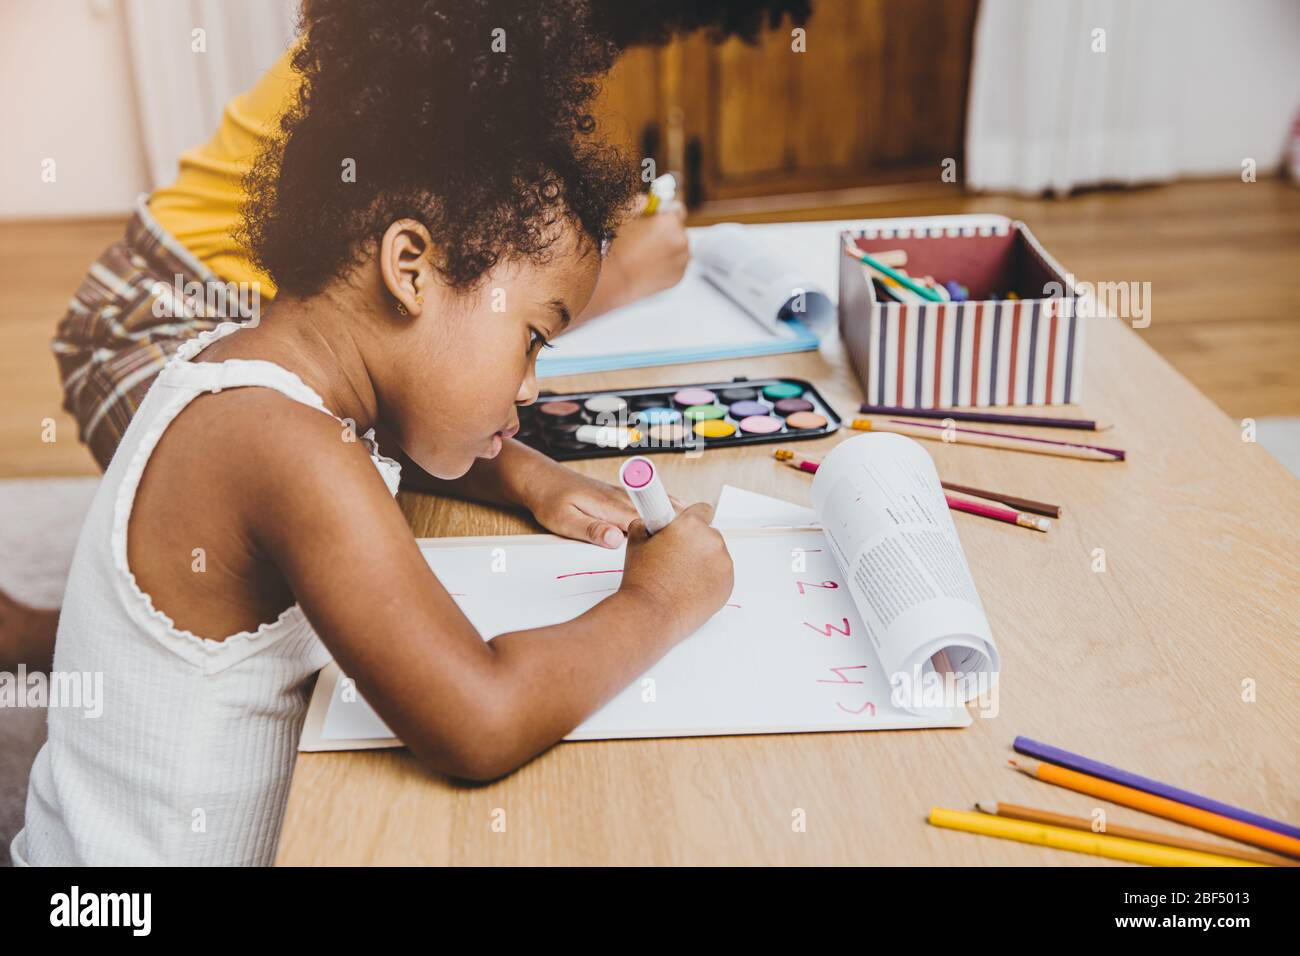 American Black fille maternelle enfants faisant des devoirs d'apprentissage avec sa sœur vivant ensemble à la maison. Banque D'Images